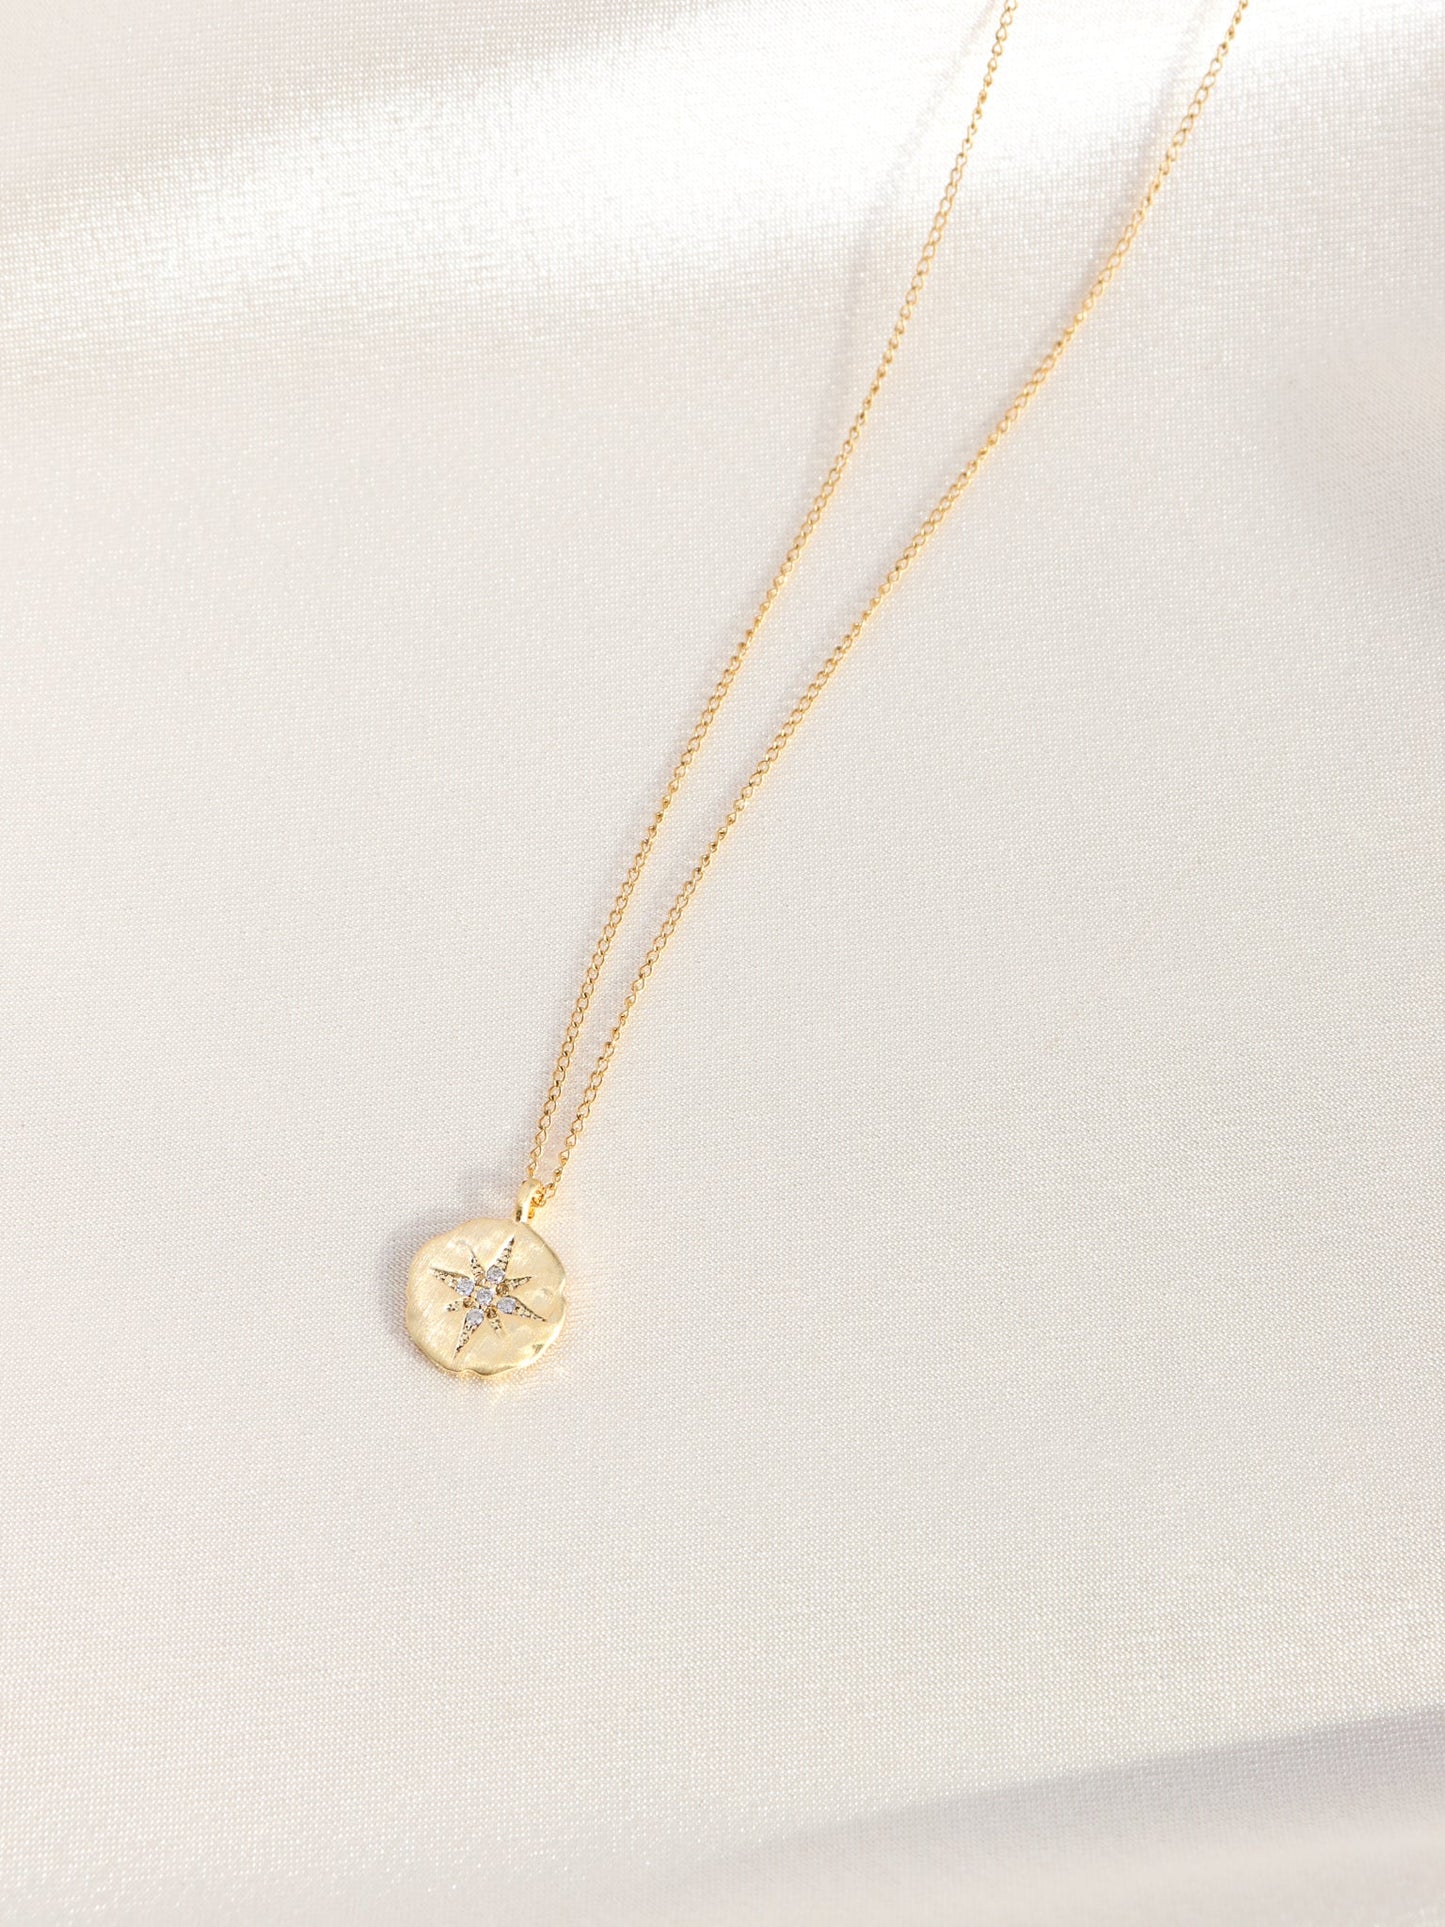 Northern Star Medallion Necklace - Gold Filled - Gemlet